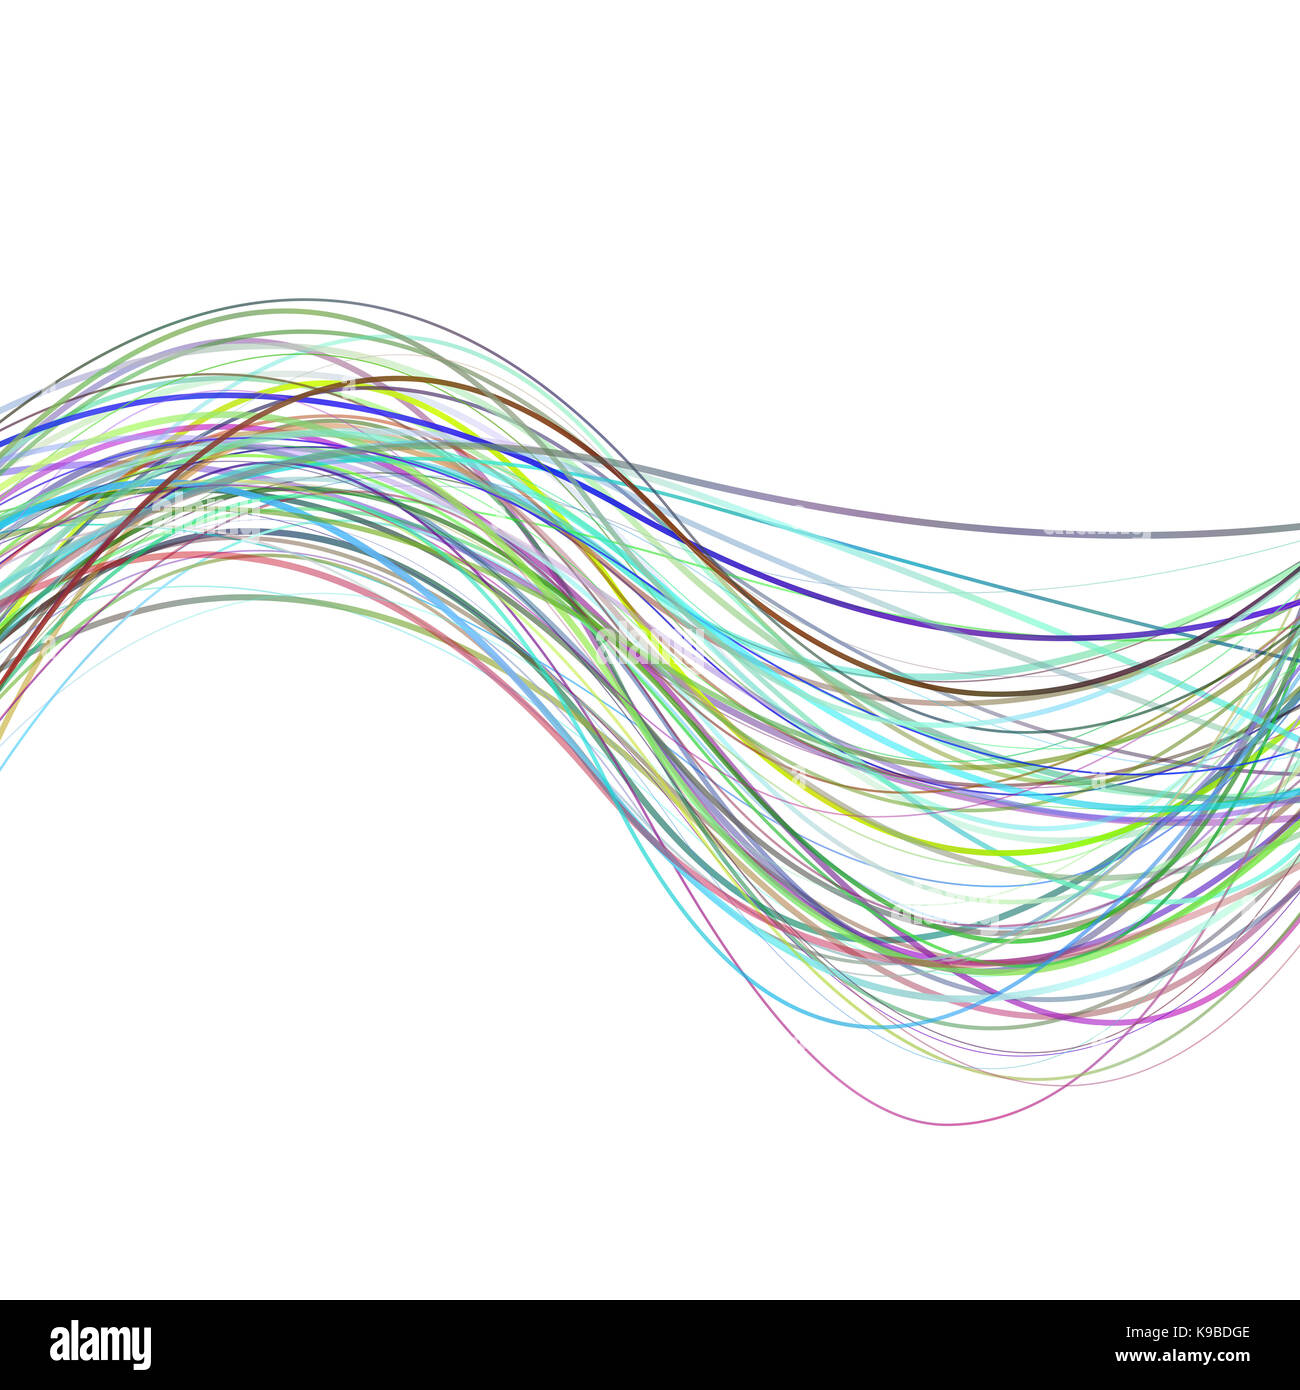 Dynamische abstrakte Welle stripe hintergrund abbildung aus farbigen geschwungene Linien Stockfoto